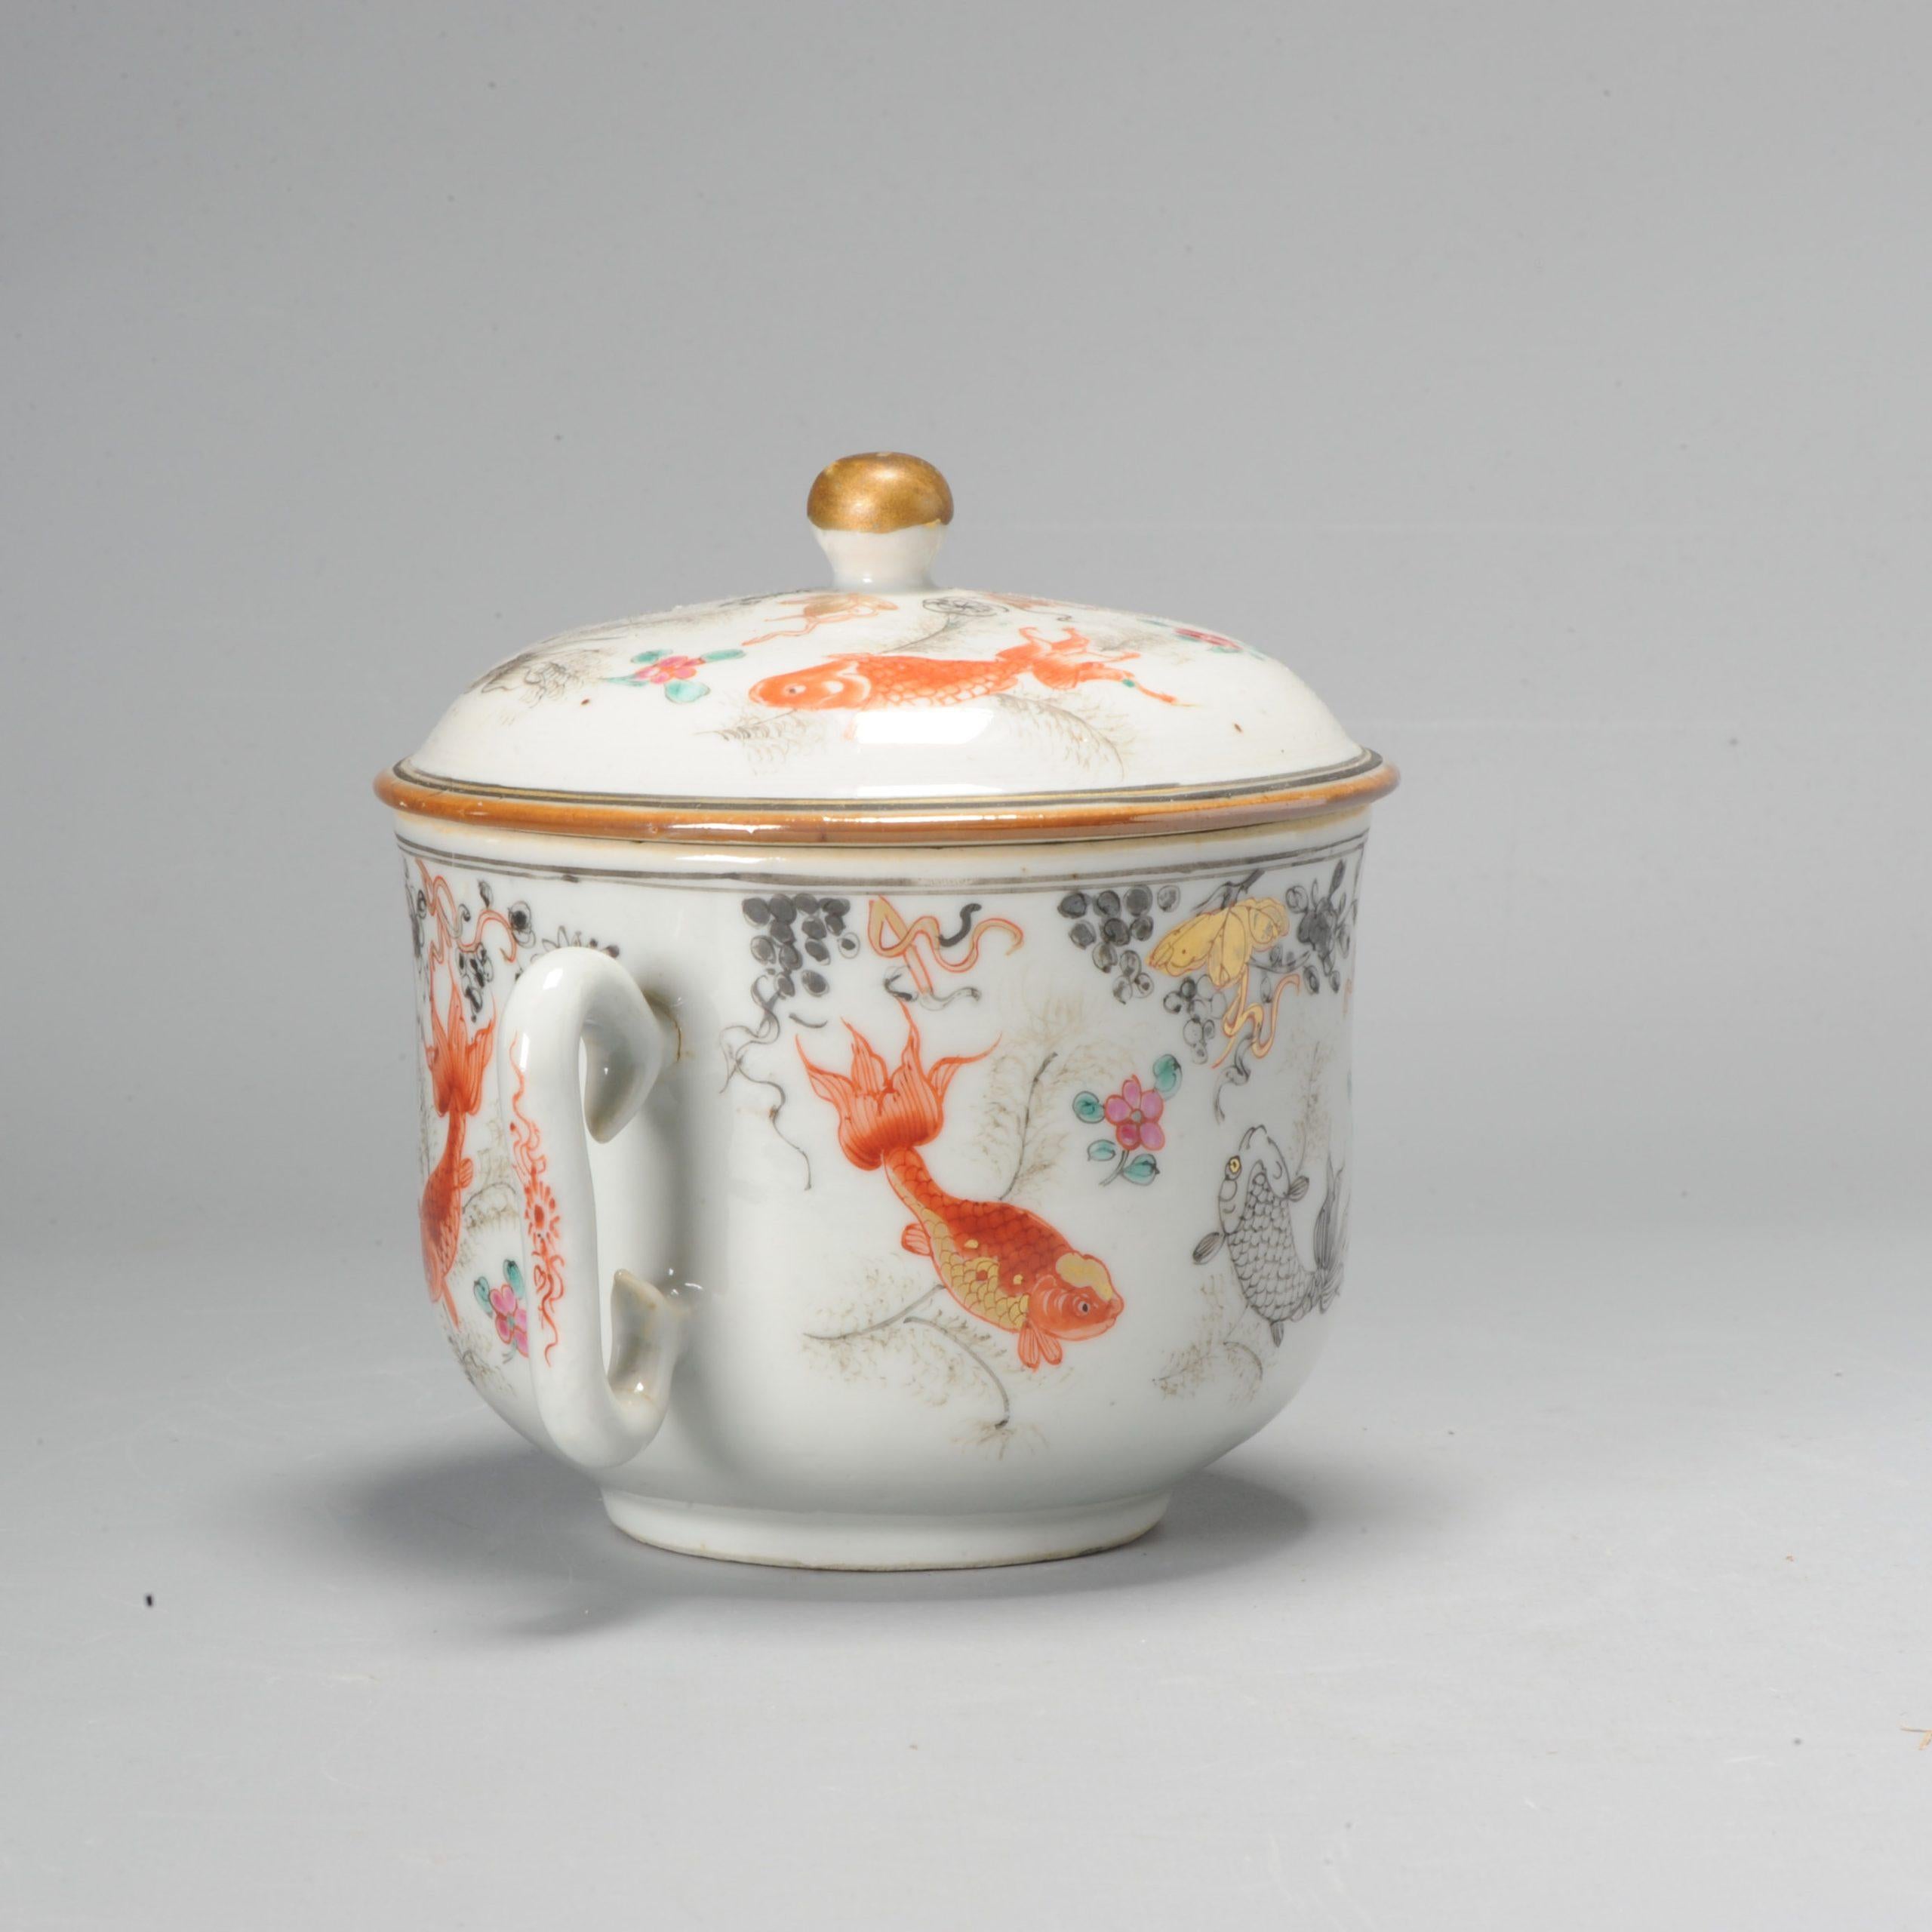 Dieser schön geformte und bemalte chinesische Porzellankrug. Mit einer Szene mit Goldfischen.

Zusätzliche Informationen:
MATERIAL: Porzellan & Töpferei
Herkunftsregion: China
Kaiser: Qianlong (1735-1796), Yongzheng (1722-1735)
Zeitraum: 18.